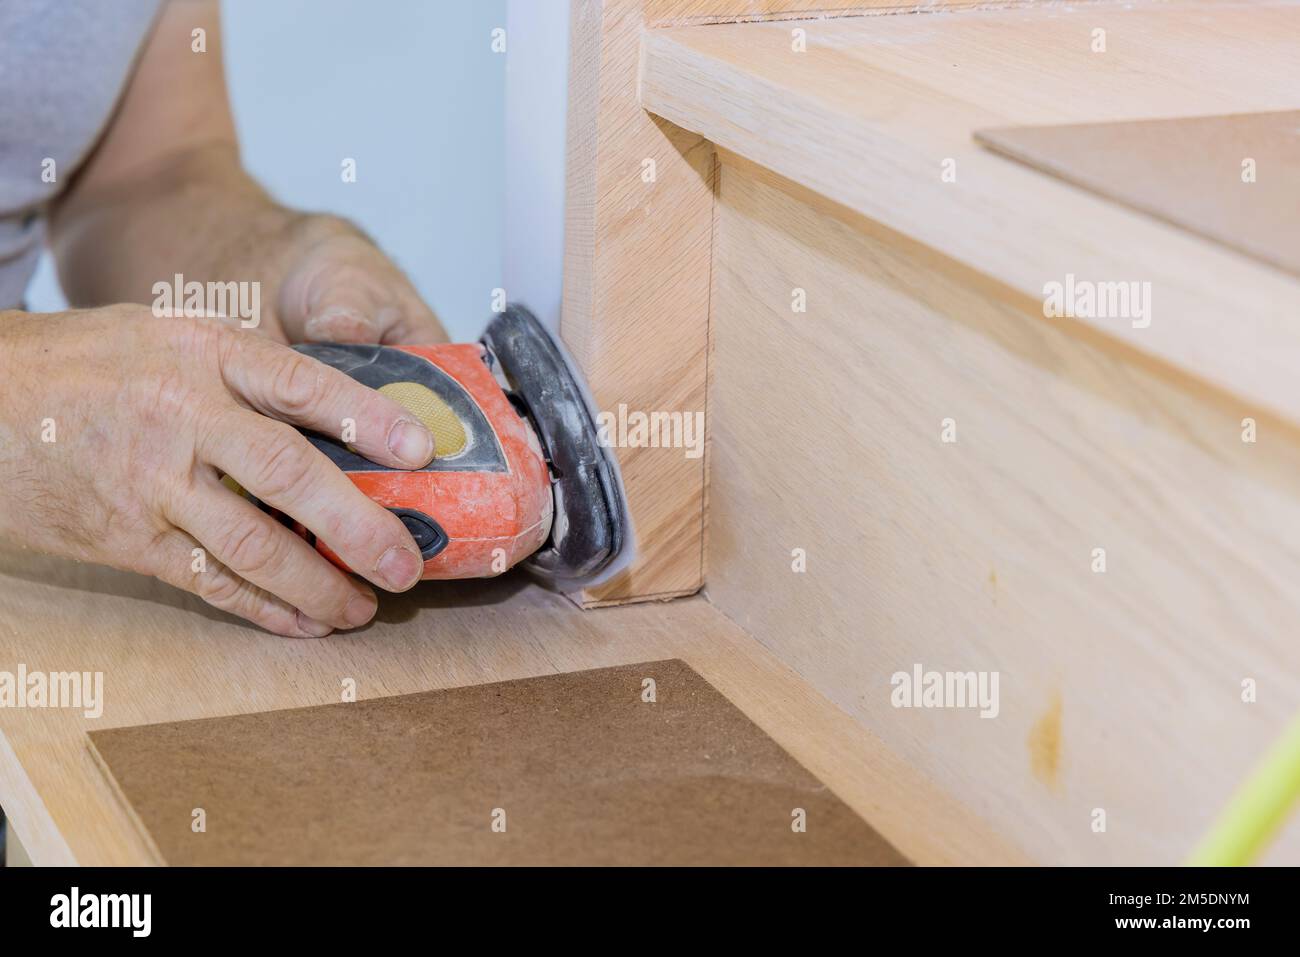 Grinding carpenter using polishing machine to refinish new home stairwell railings trims Stock Photo